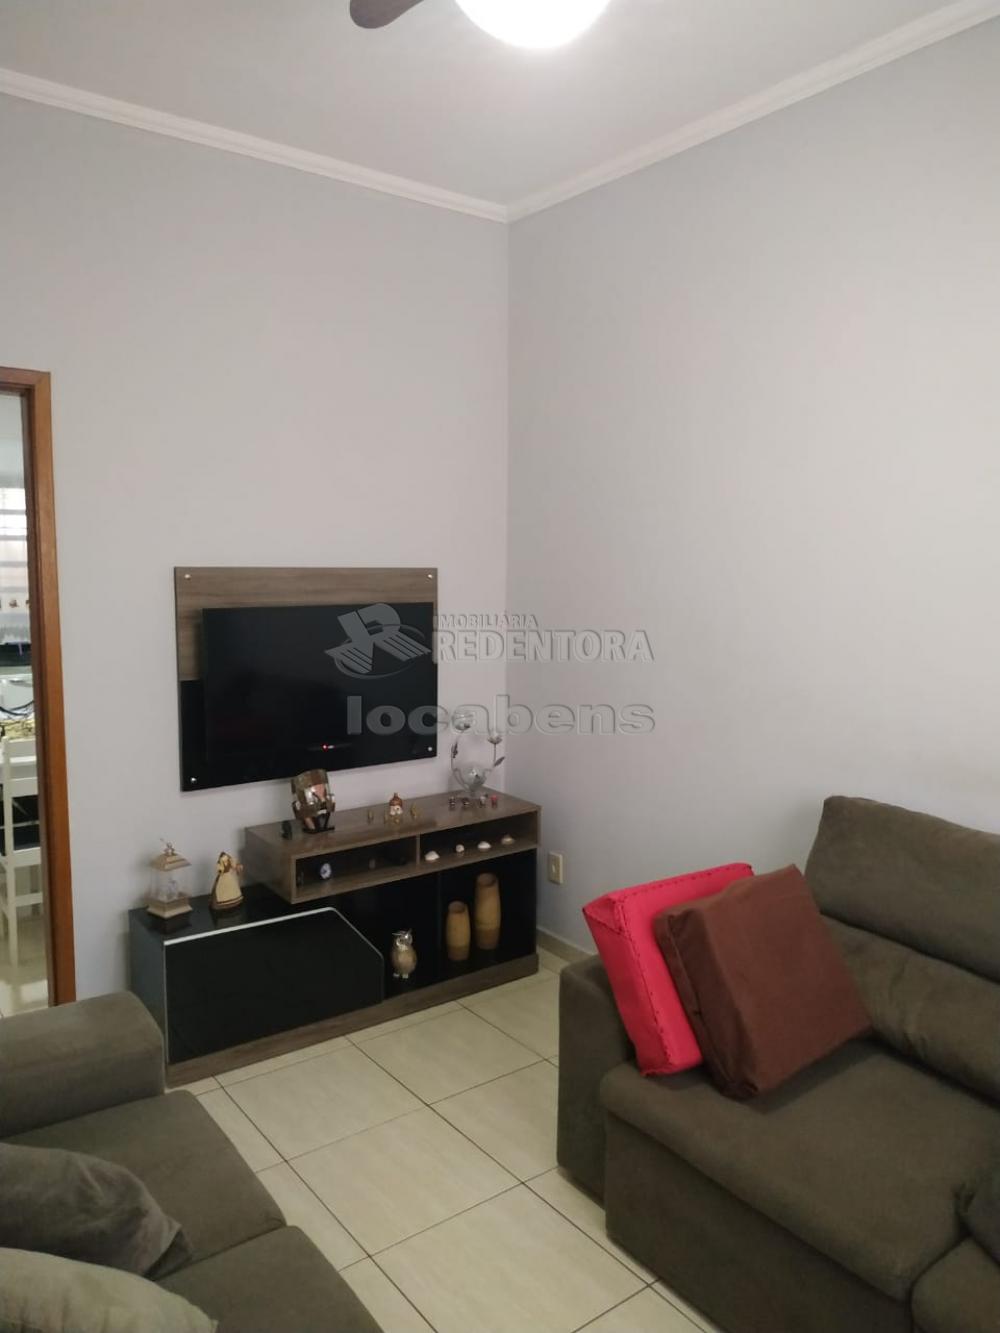 Alugar Casa / Padrão em São José do Rio Preto apenas R$ 1.100,00 - Foto 7